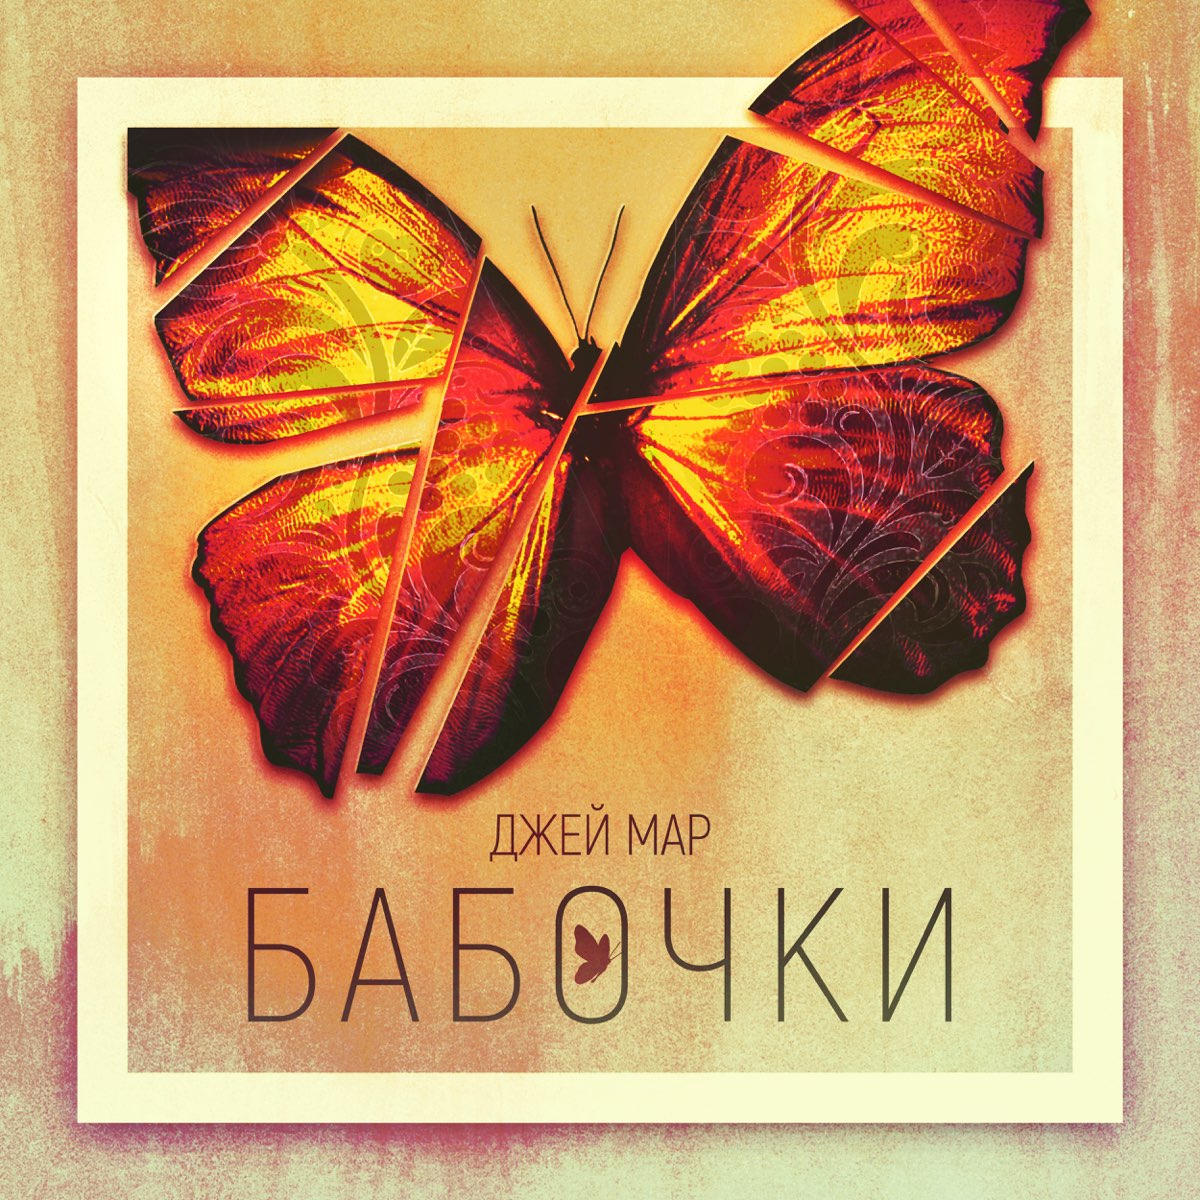 Бабочка обложка. Альбом с бабочками. Обложка музыкального альбома с бабочкой. Бабочка обложка песни. Песня бабочки.